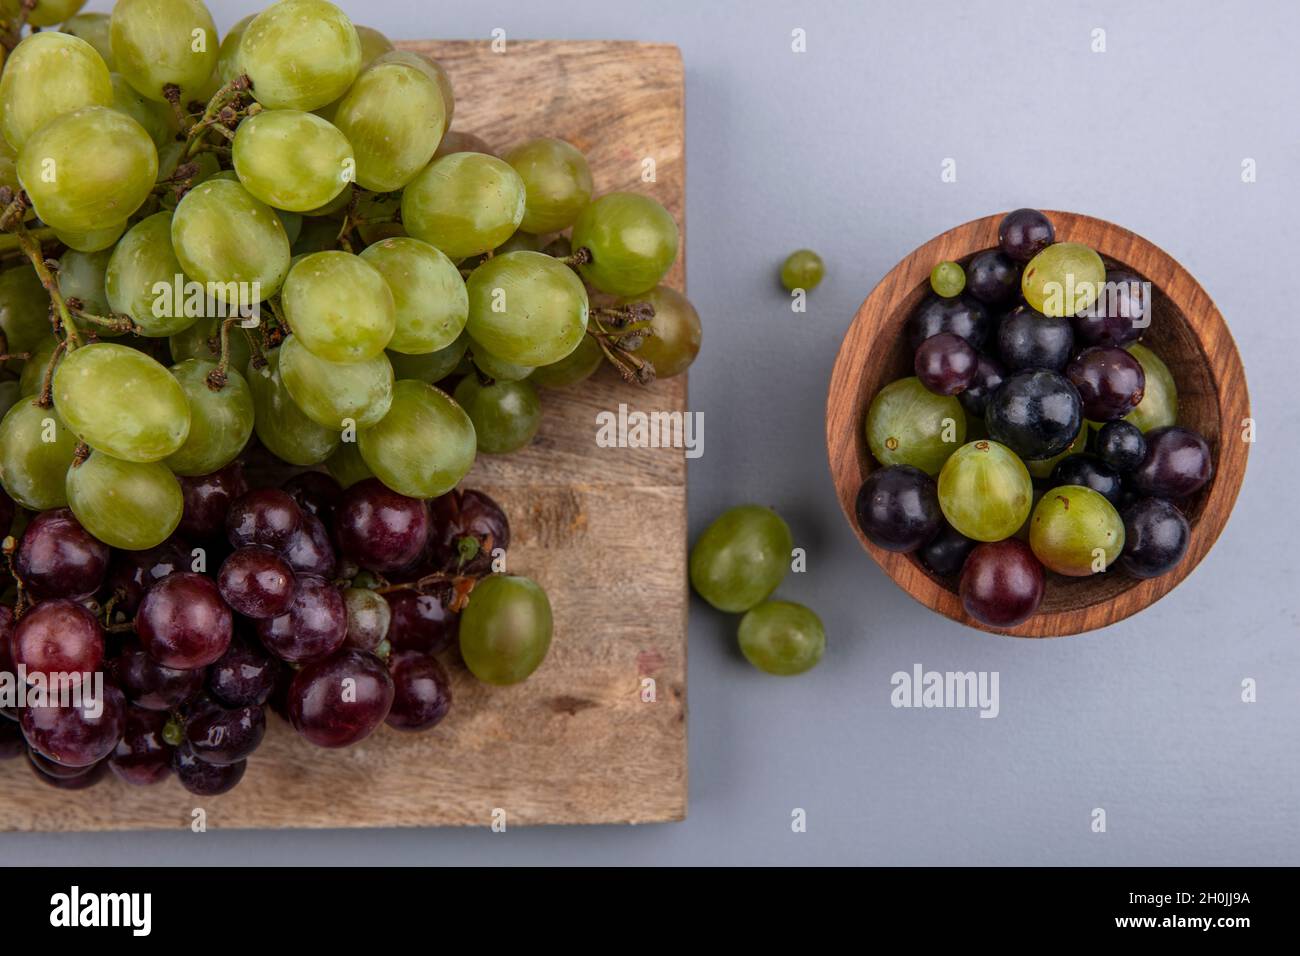 vista dall'alto delle uve bianche e rosse sul tagliere e ciotola di acini su sfondo grigio Foto Stock